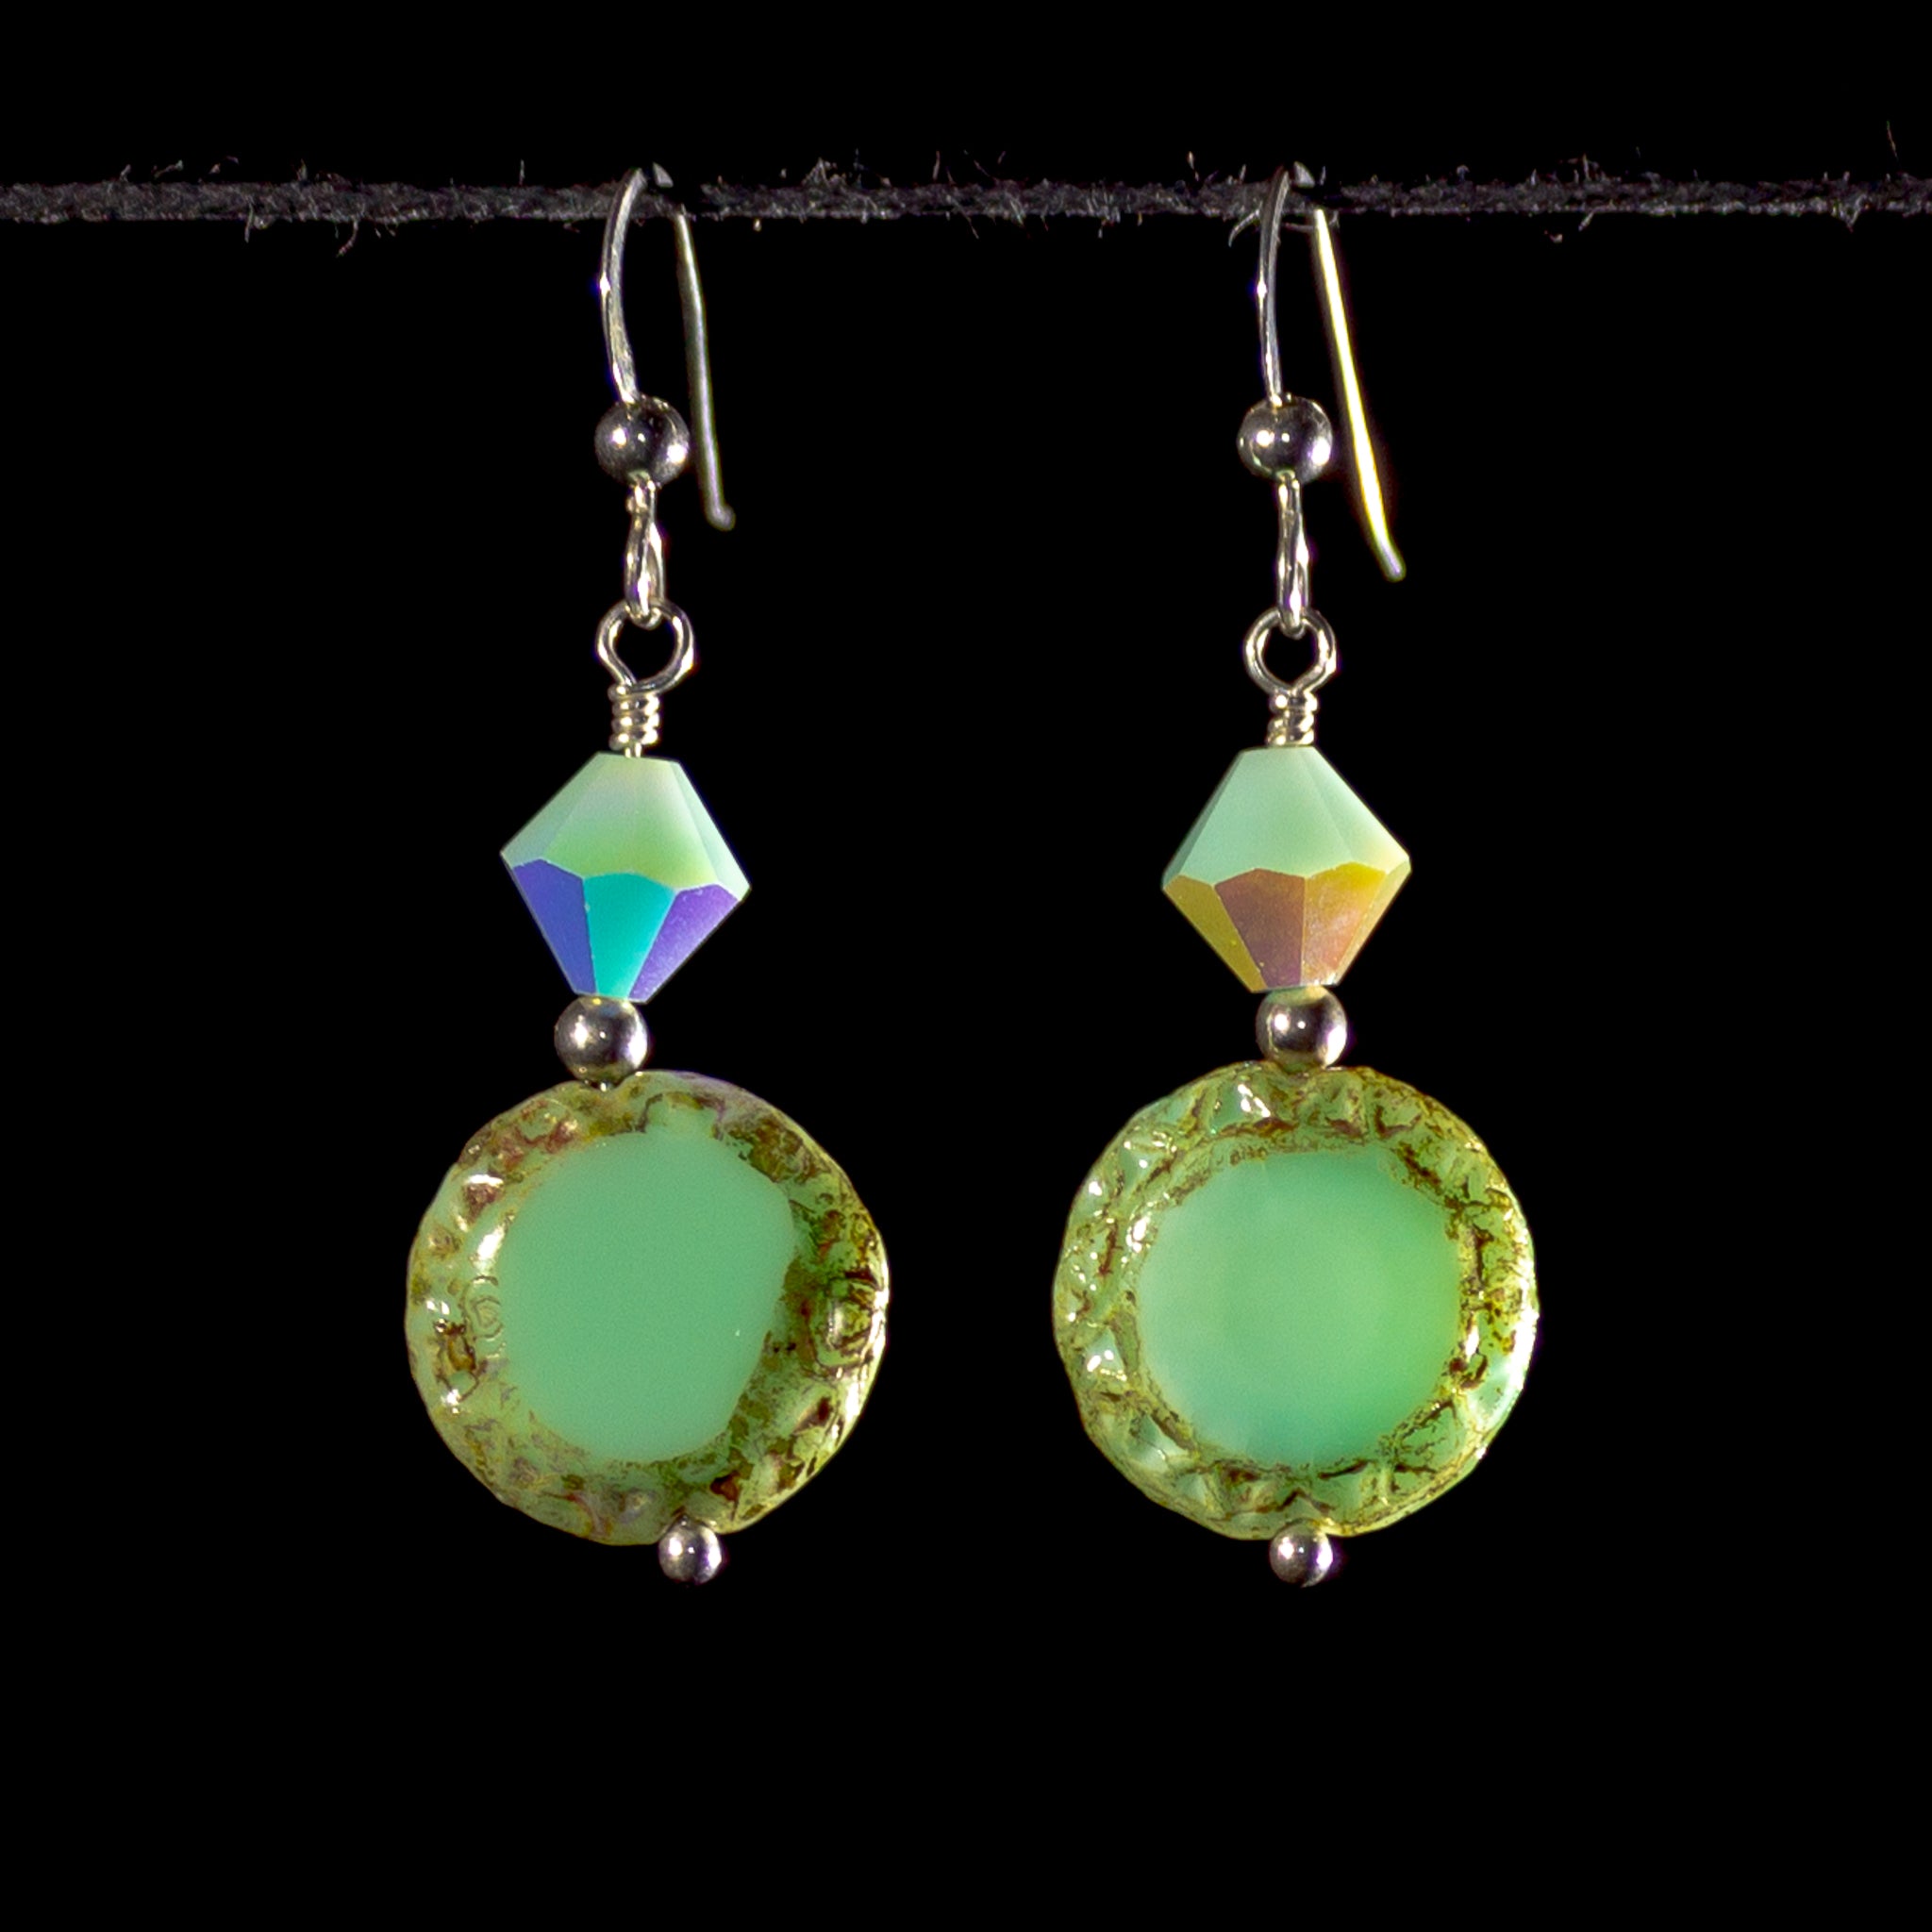 Pale green earrings